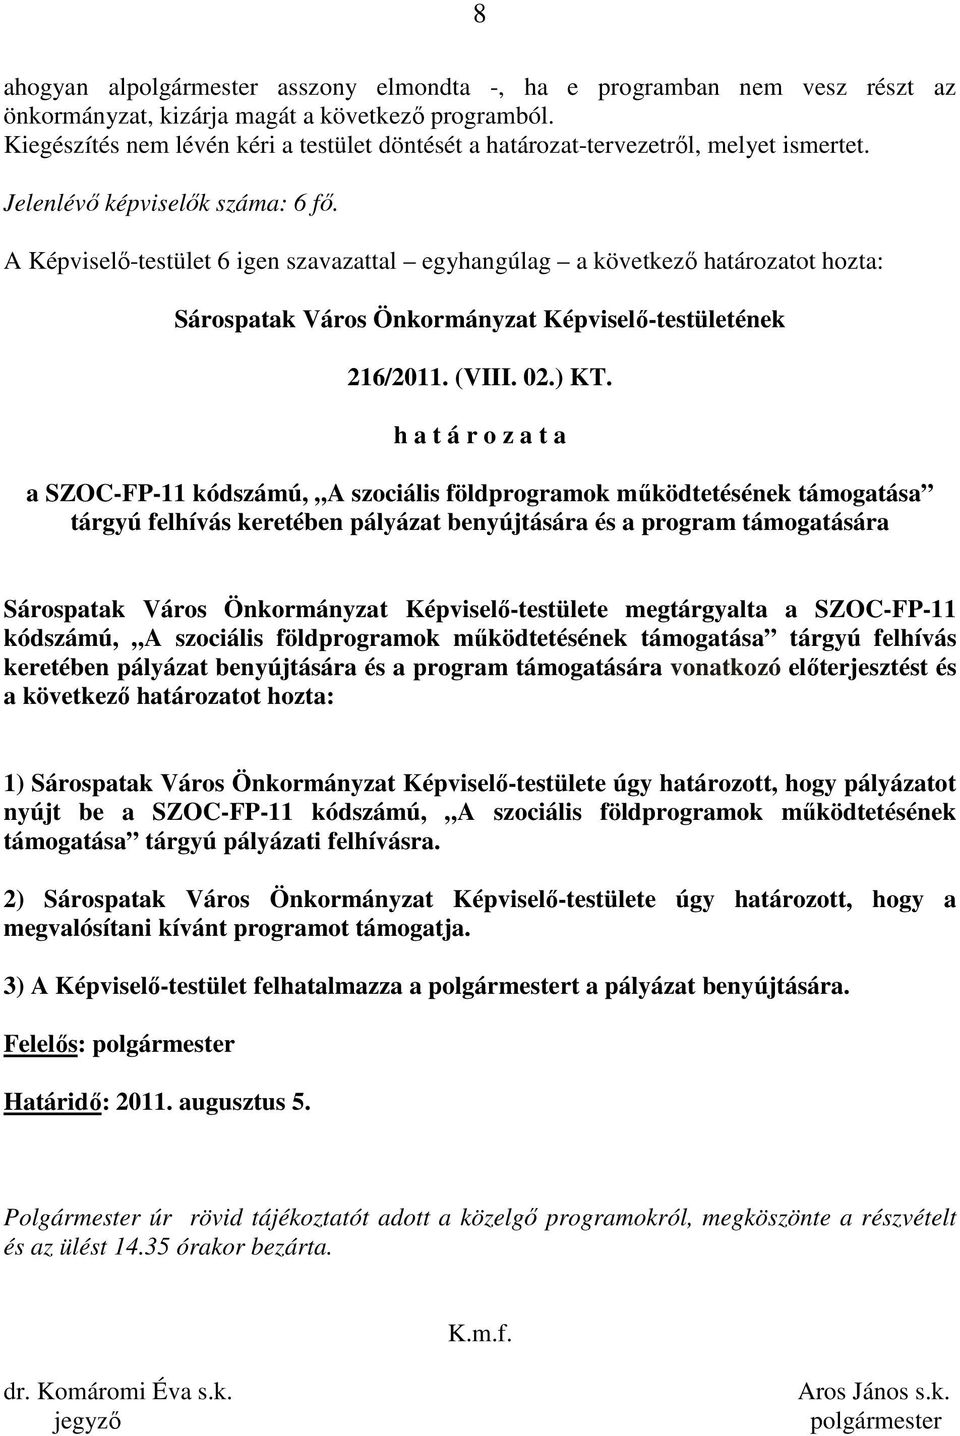 A Képviselı-testület 6 igen szavazattal egyhangúlag a következı határozatot hozta: Sárospatak Város Önkormányzat Képviselı-testületének 216/2011. (VIII. 02.) KT.